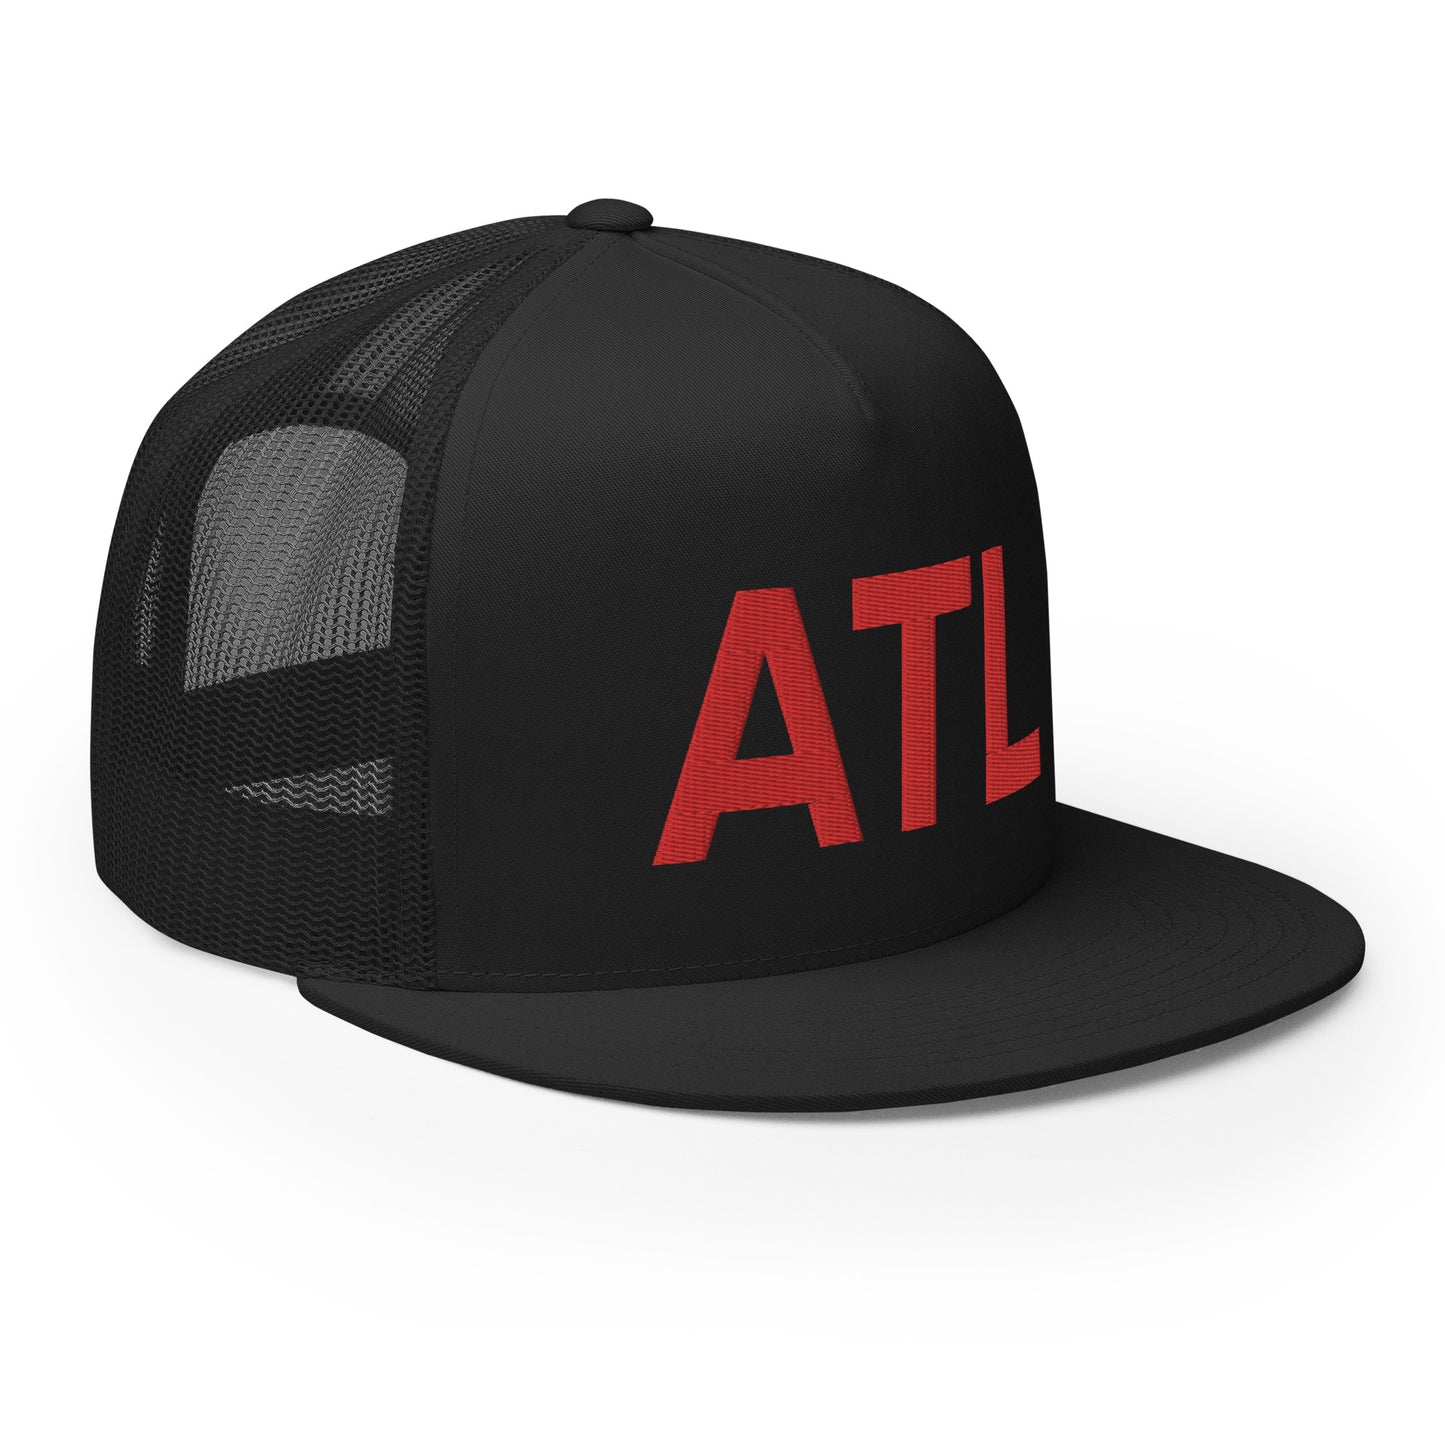 ATL Atlanta Trucker Hat